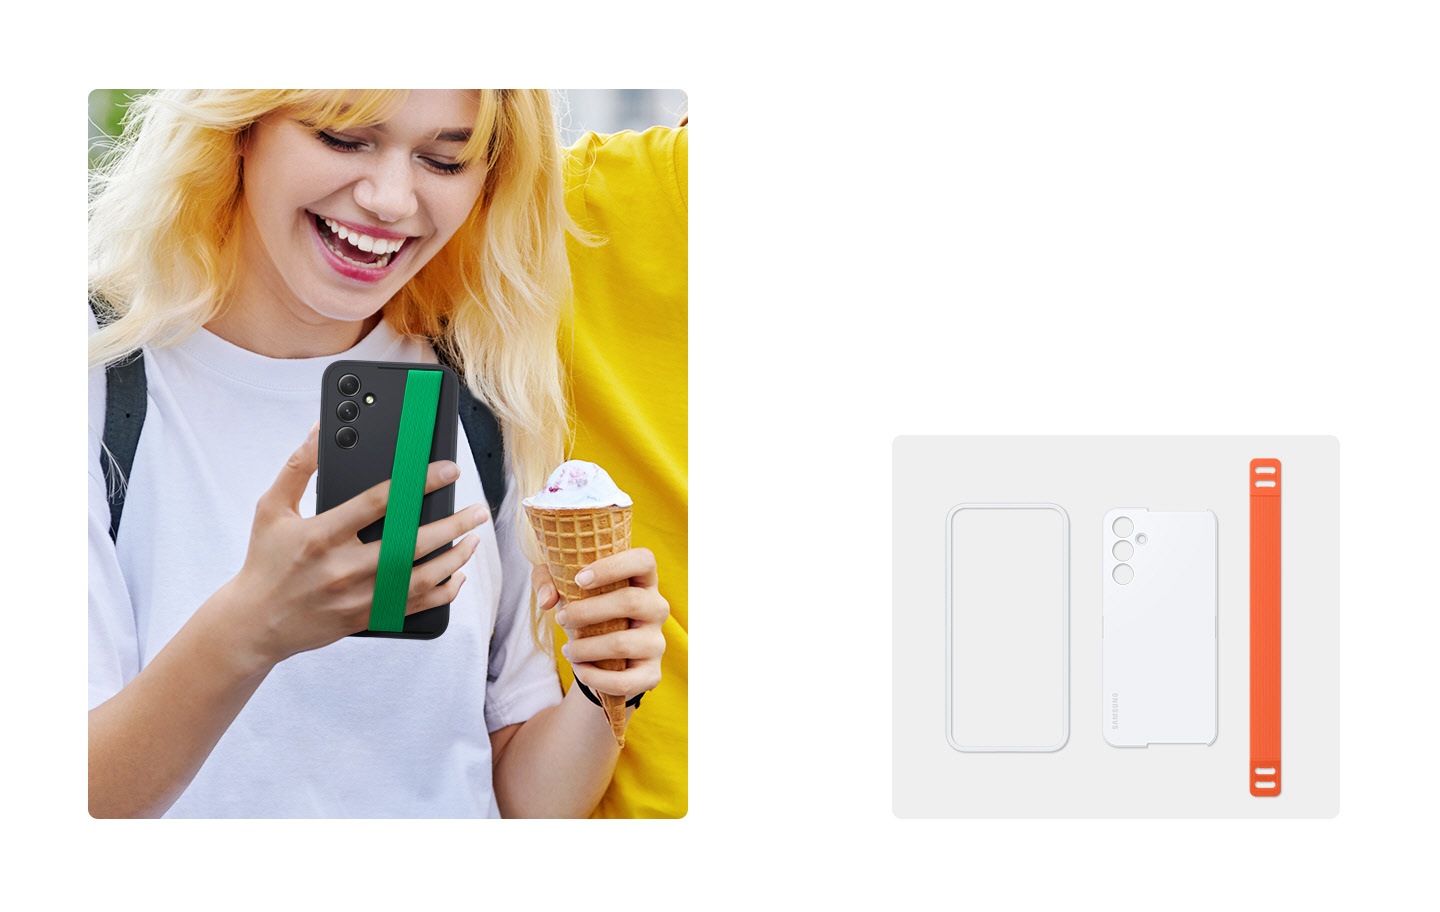 A la izquierda, una mujer sonriendo está mirando su dispositivo Galaxy con un estuche negro Haze Grip con una correa verde mientras sostiene un cono de helado en la otra mano. A la derecha, el marco y la placa posterior de un estuche blanco Haze Grip, así como una correa naranja están alineados.